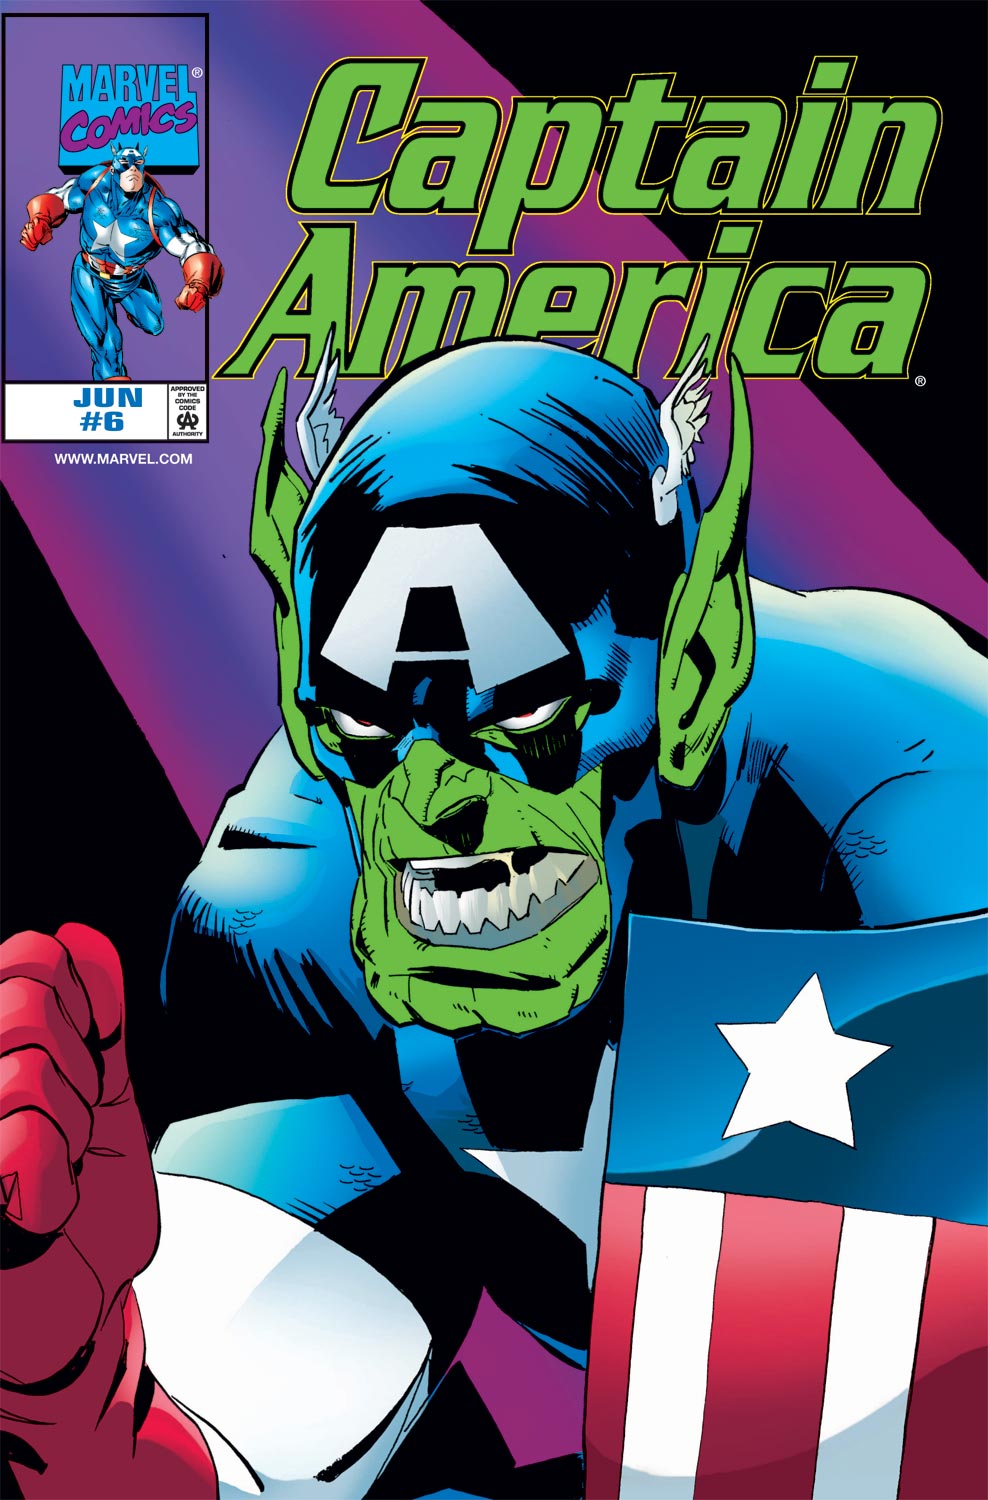 Captain America (1998) #6